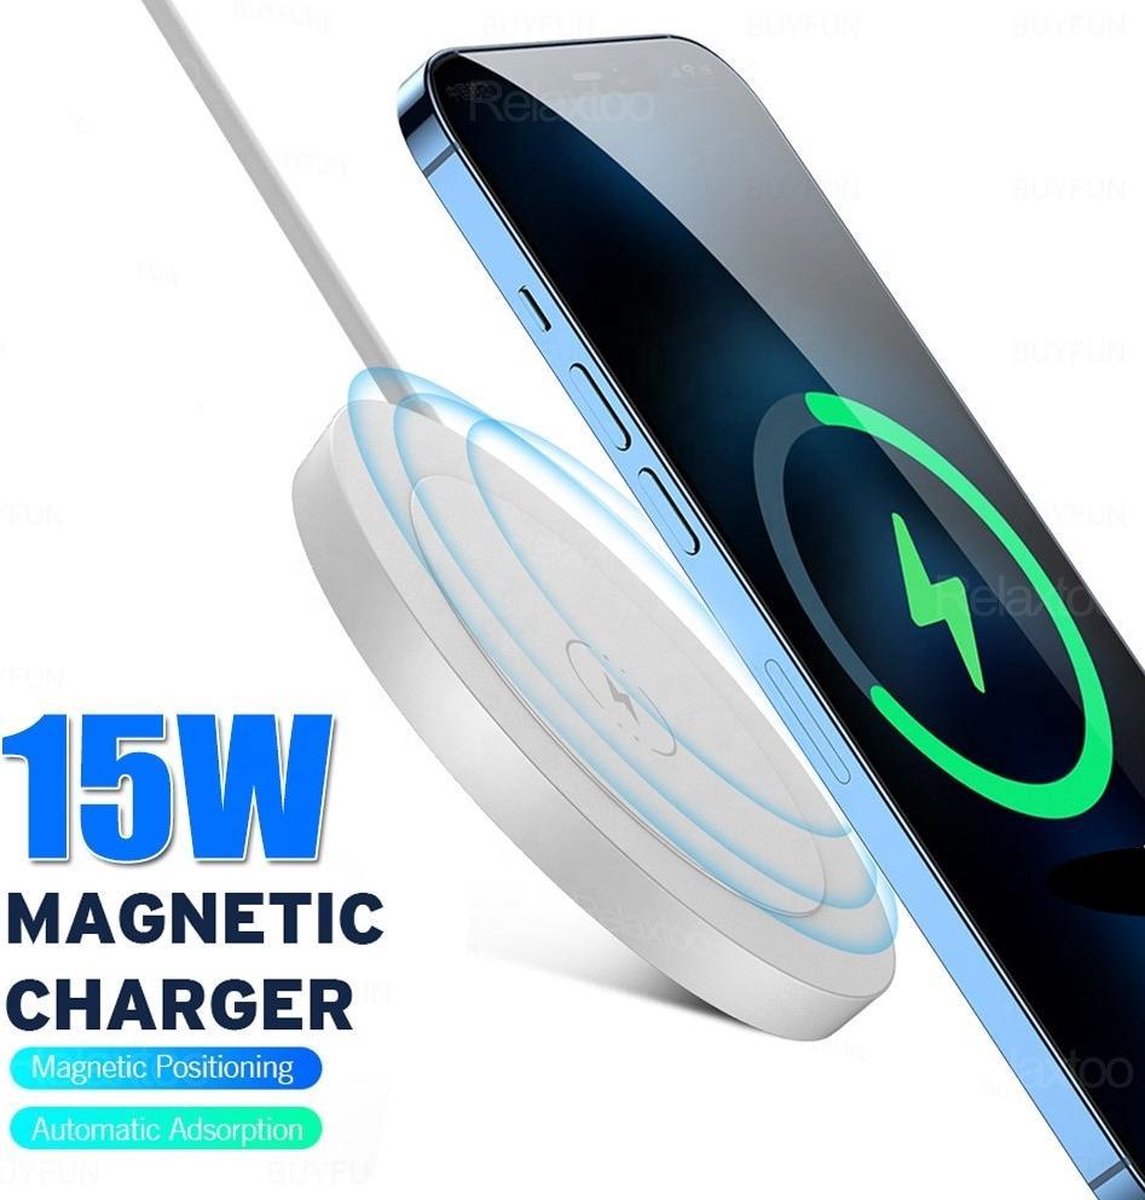 Chargeur MagSafe sans fil pour iPhone 12/mini/Pro/Max – iPhoShop